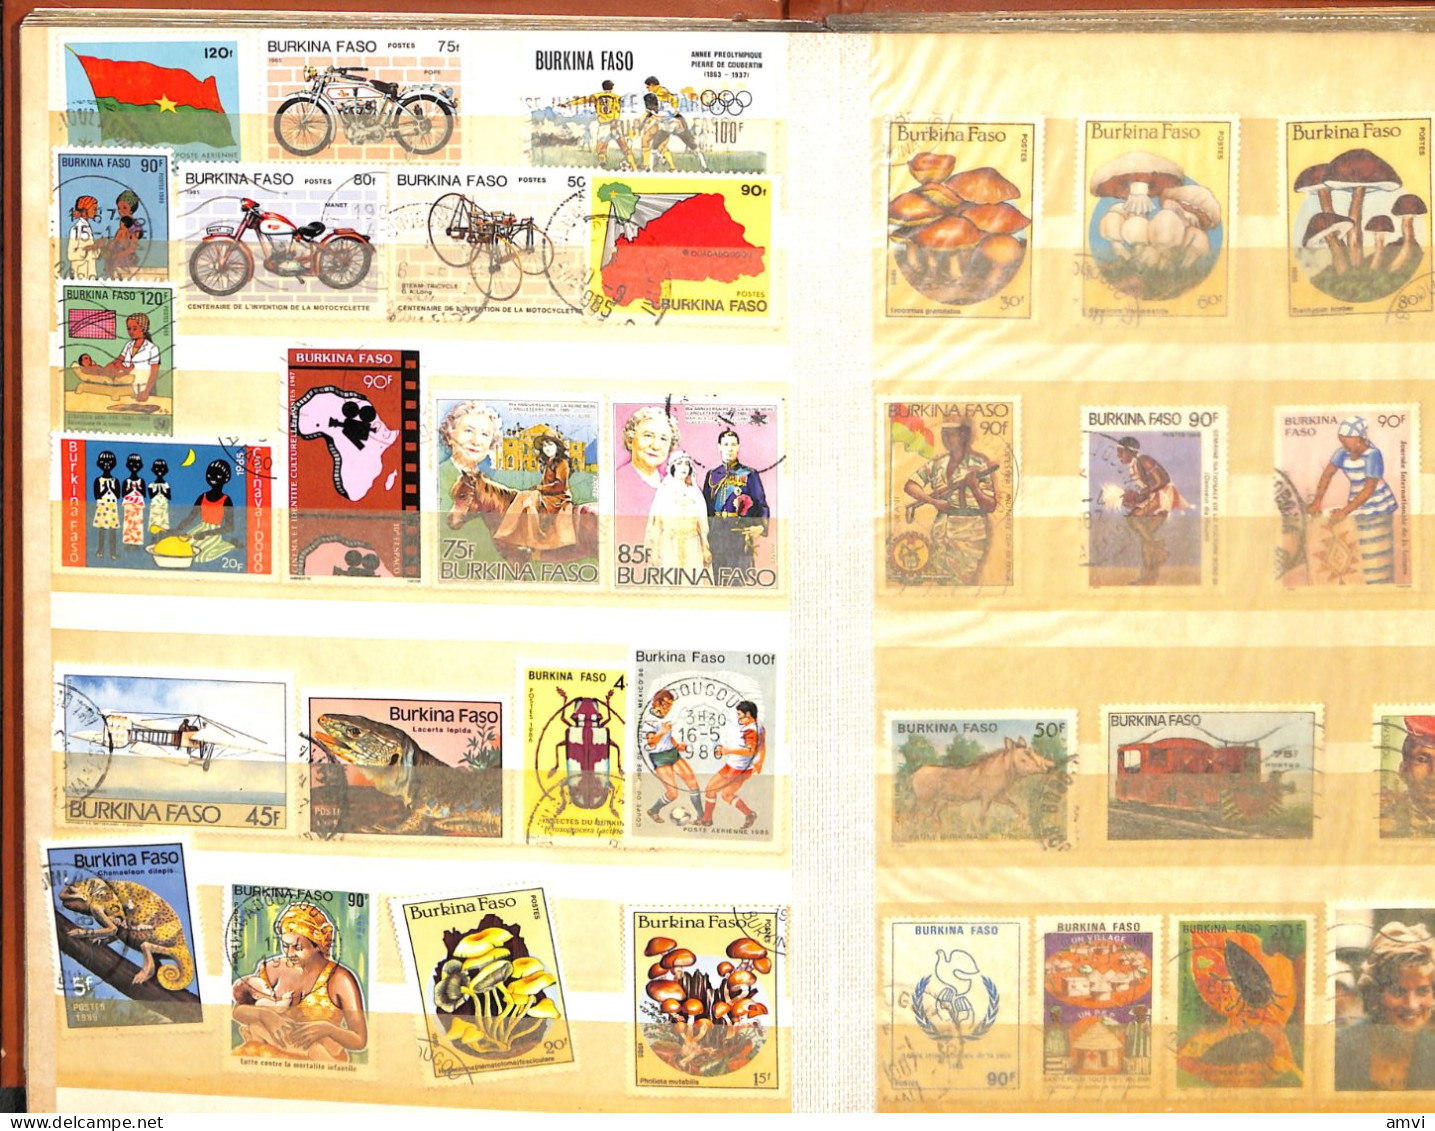 sam - continent africain album de plusieurs centaines de timbres